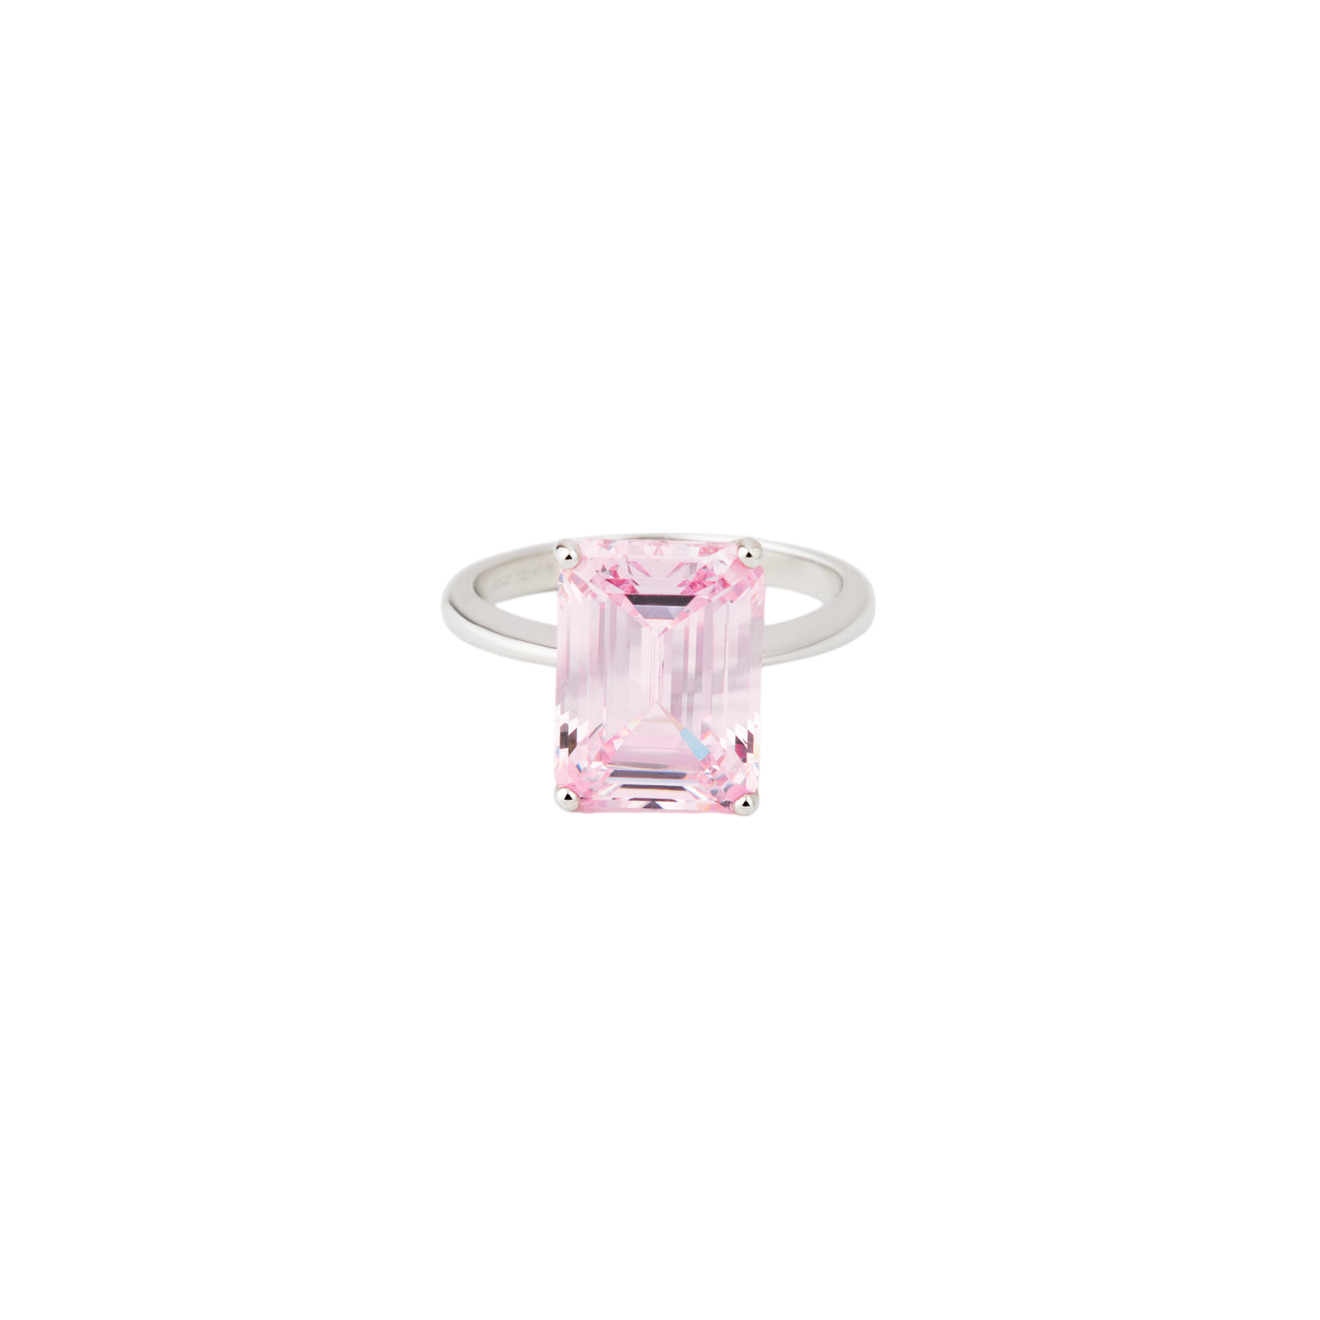 Holy Silver Кольцо из серебра с розовым прямоугольным камнем de formee кольцо тай дай желтое с розовым цветом из полимерной глины с сиреневым камнем